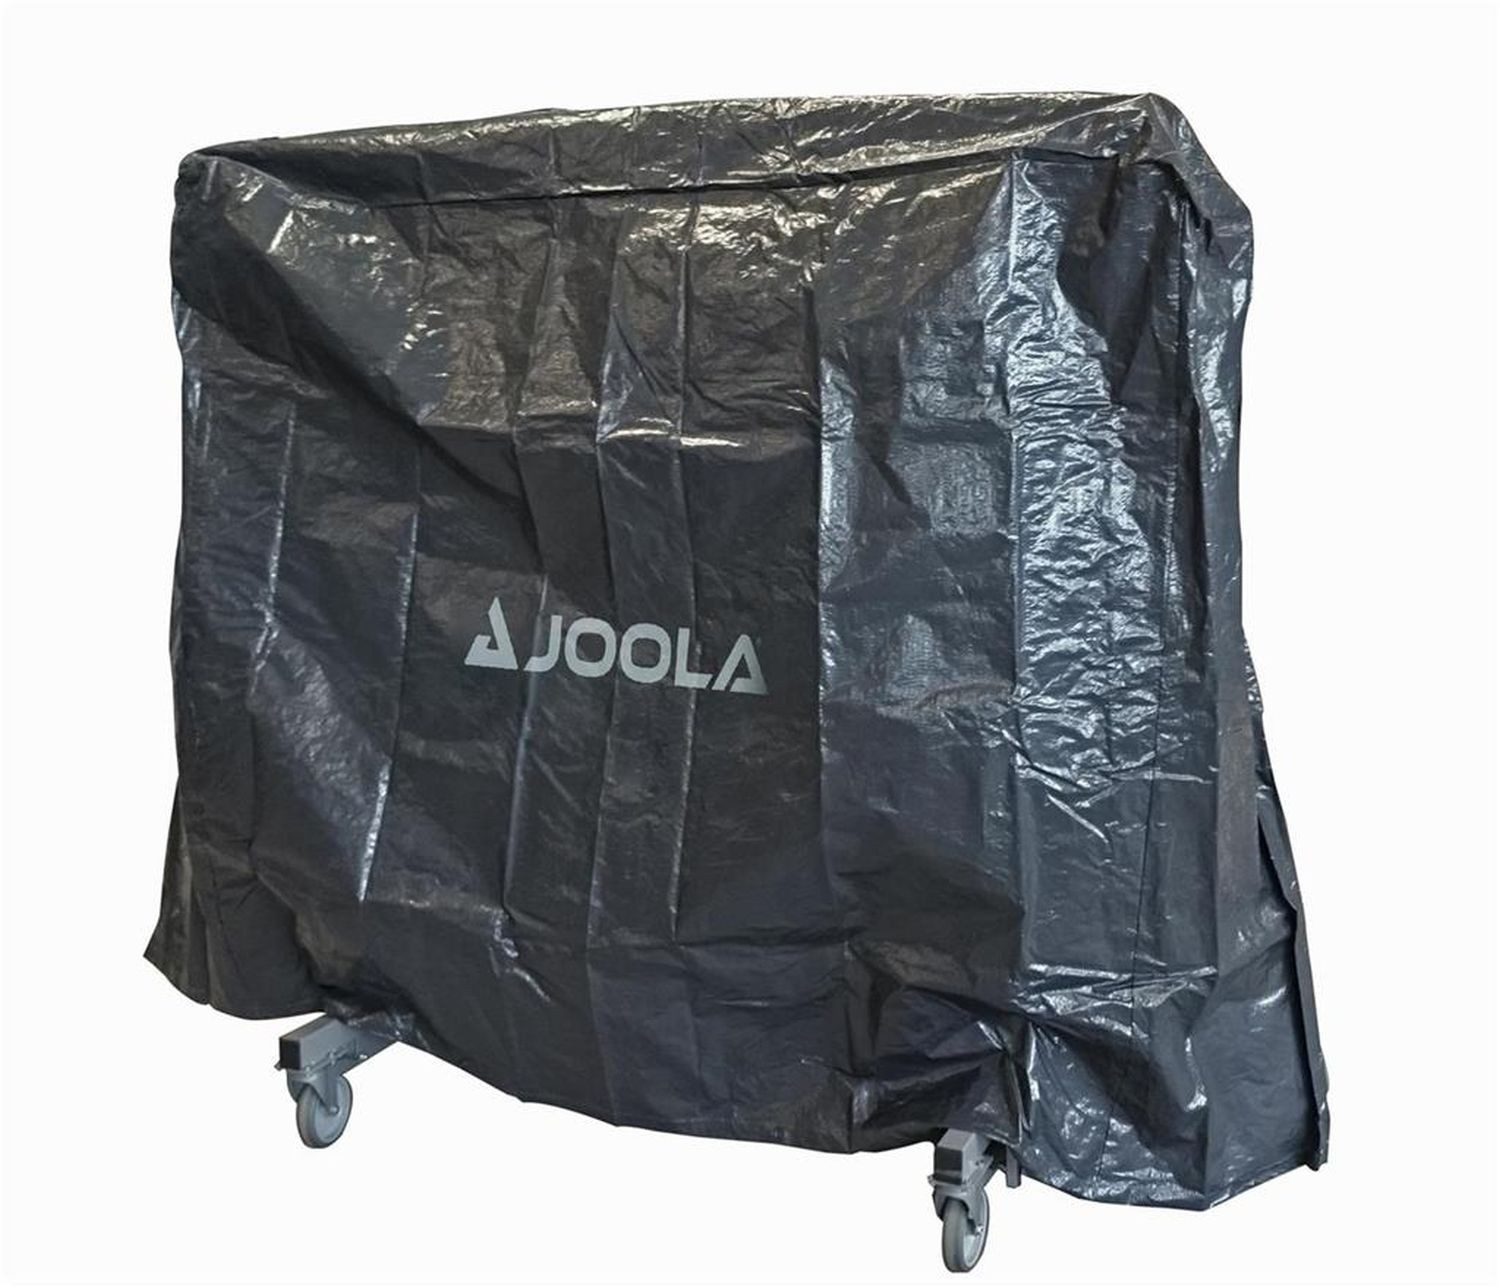 Joola Tischtennisschläger Abdeckplane Tischtennisplatte, Bag